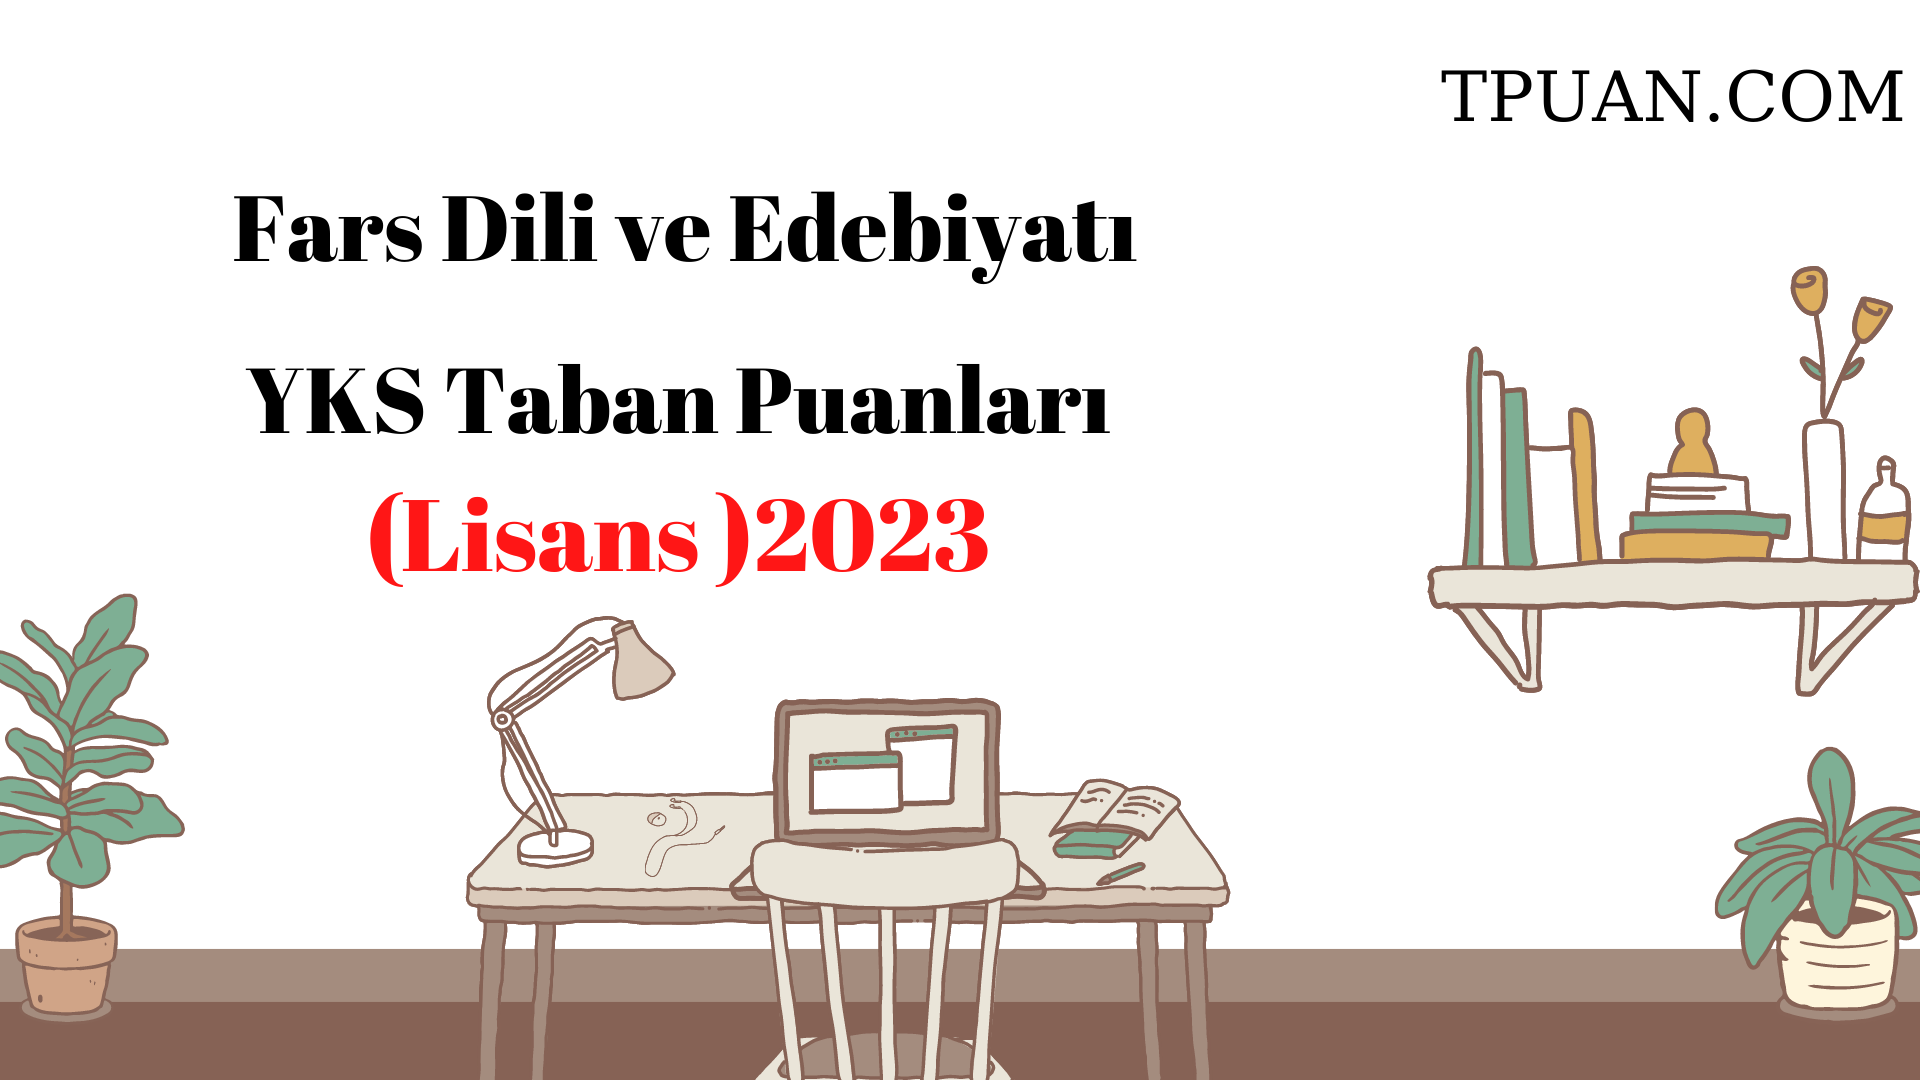  Fars Dili ve Edebiyatı Bölümü YKS Taban Puanları (4 Yıllık) 2023